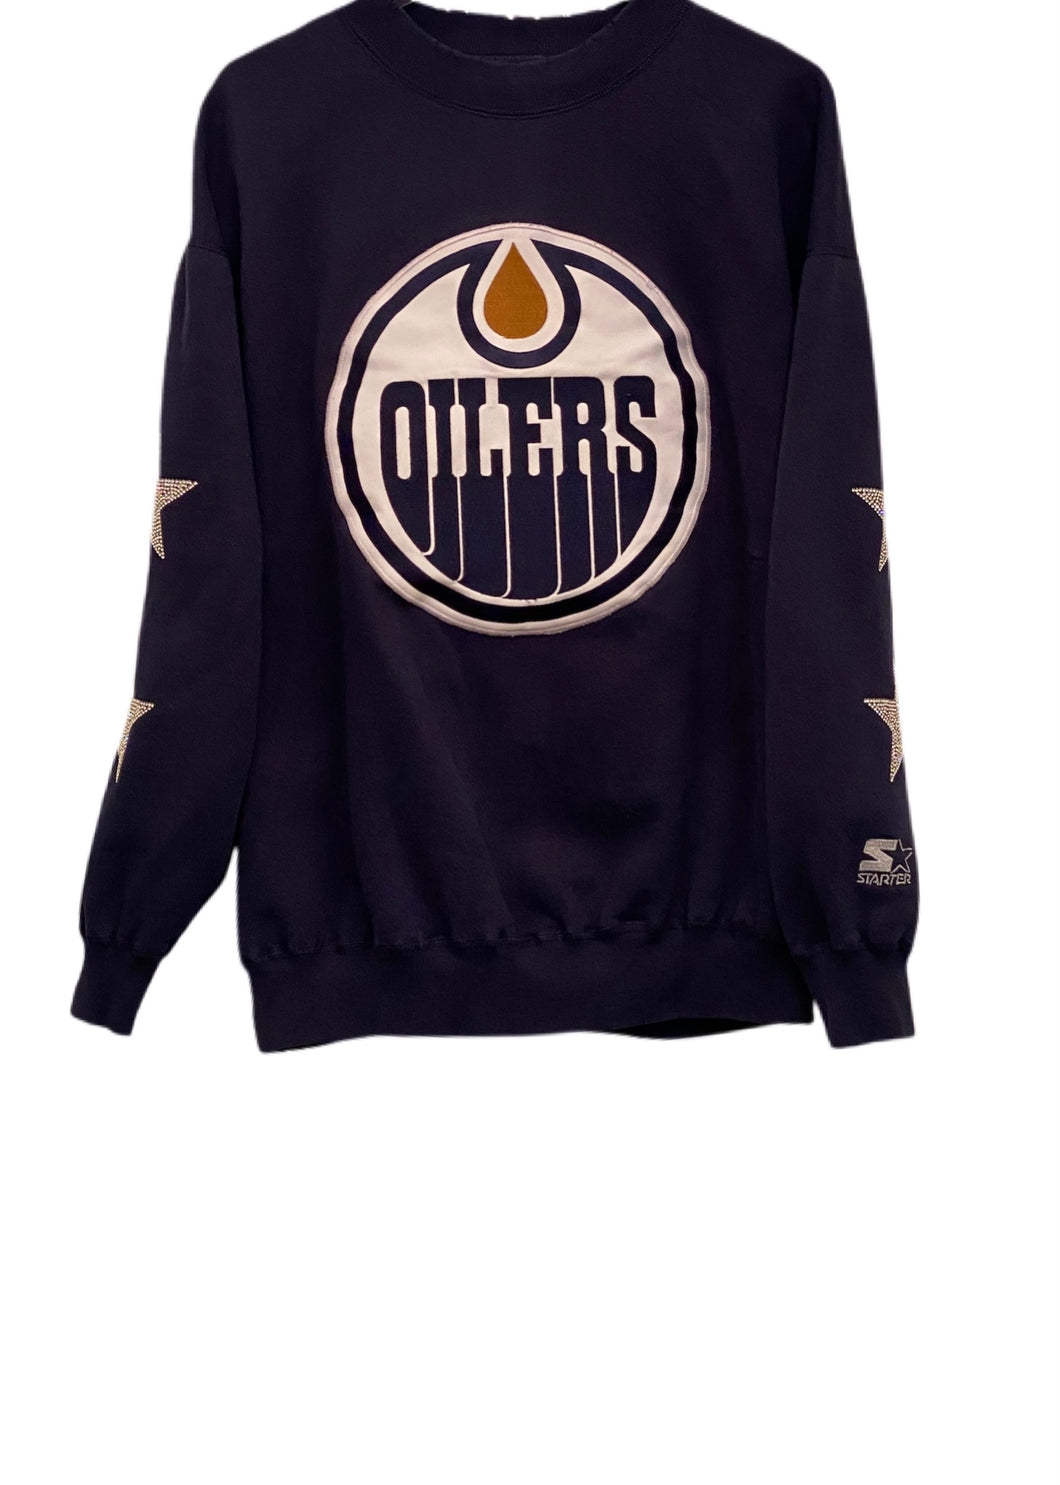 Edmonton Oilers, NHL One of a KIND Vintage Sweatshirt with Crystal Stars Design